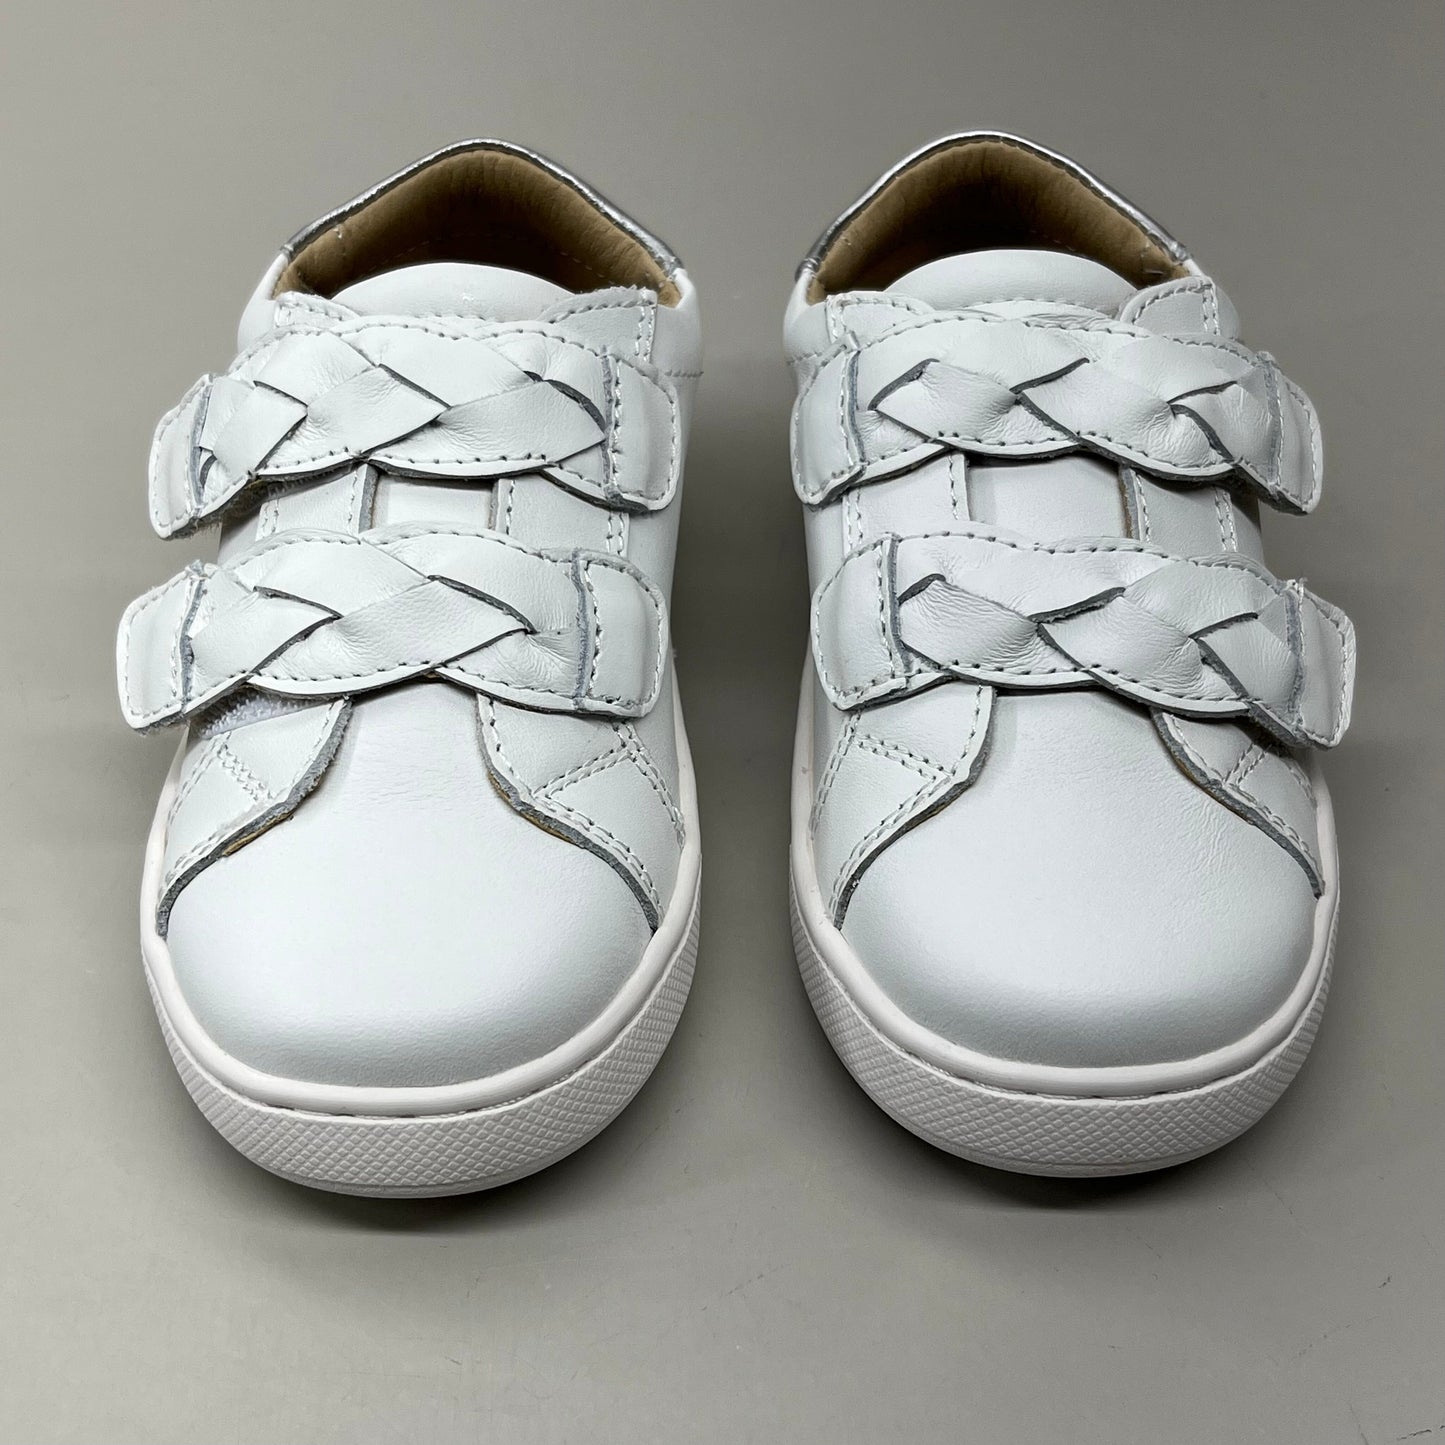 OLD SOLES Kid's Plats Leather Shoe Sz 13.5 EU 31 Snow / Silver #6134